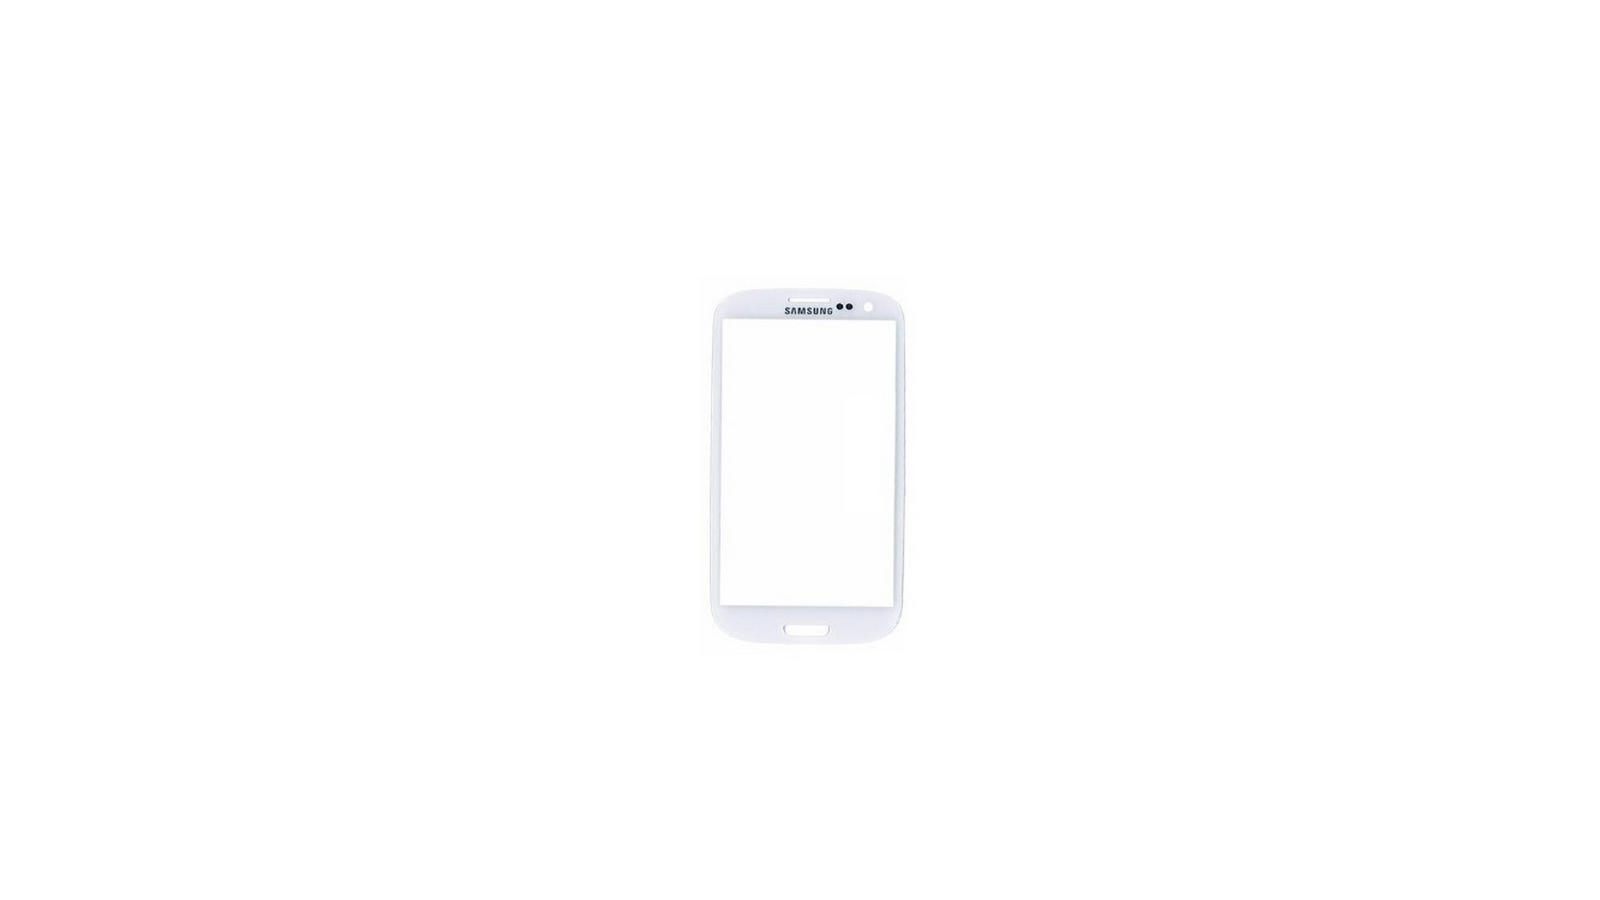 Vetro per touch screen Samsung Galaxy S3 i9300 bianco